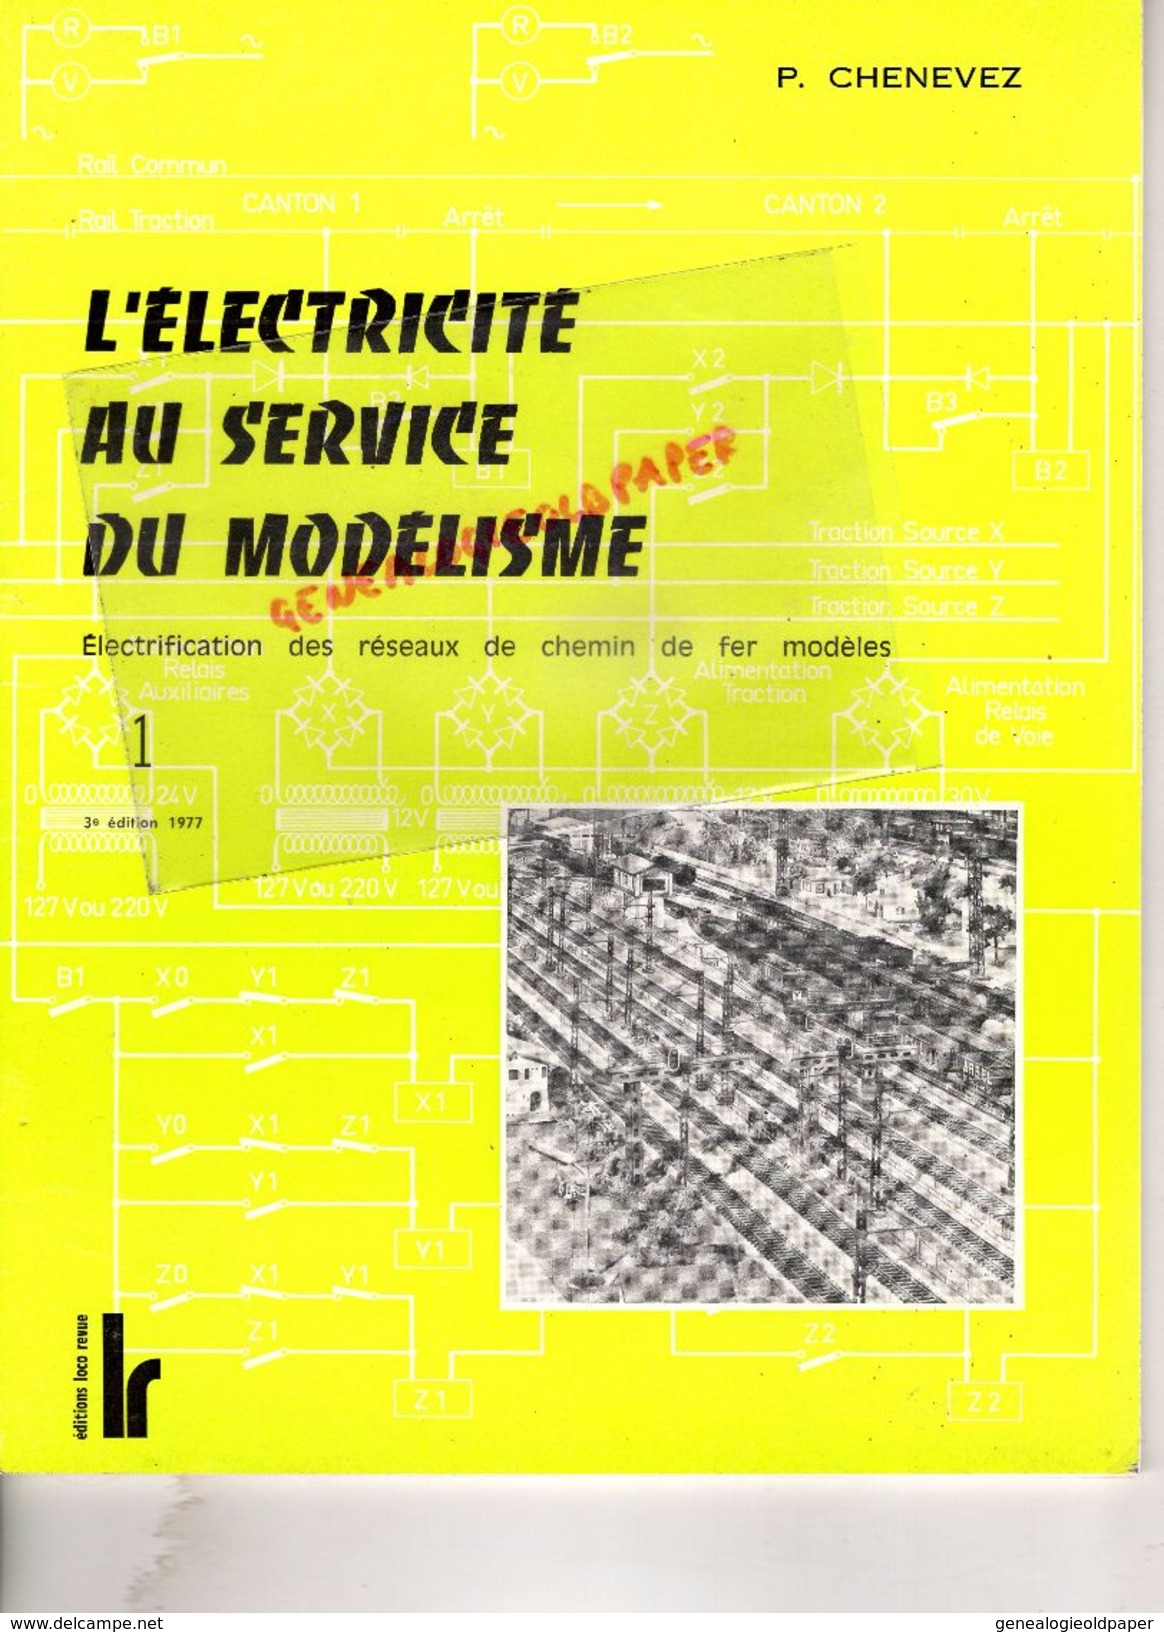 CATALOGUE JOUETS- L' ELECTRICITE AU SERVICE DU MODELISME- CHEMIN DE FER -R. CHENEVEZ-TOME 1-1977-LOCO REVUE AURAY-GARE - Ferrocarril & Tranvías